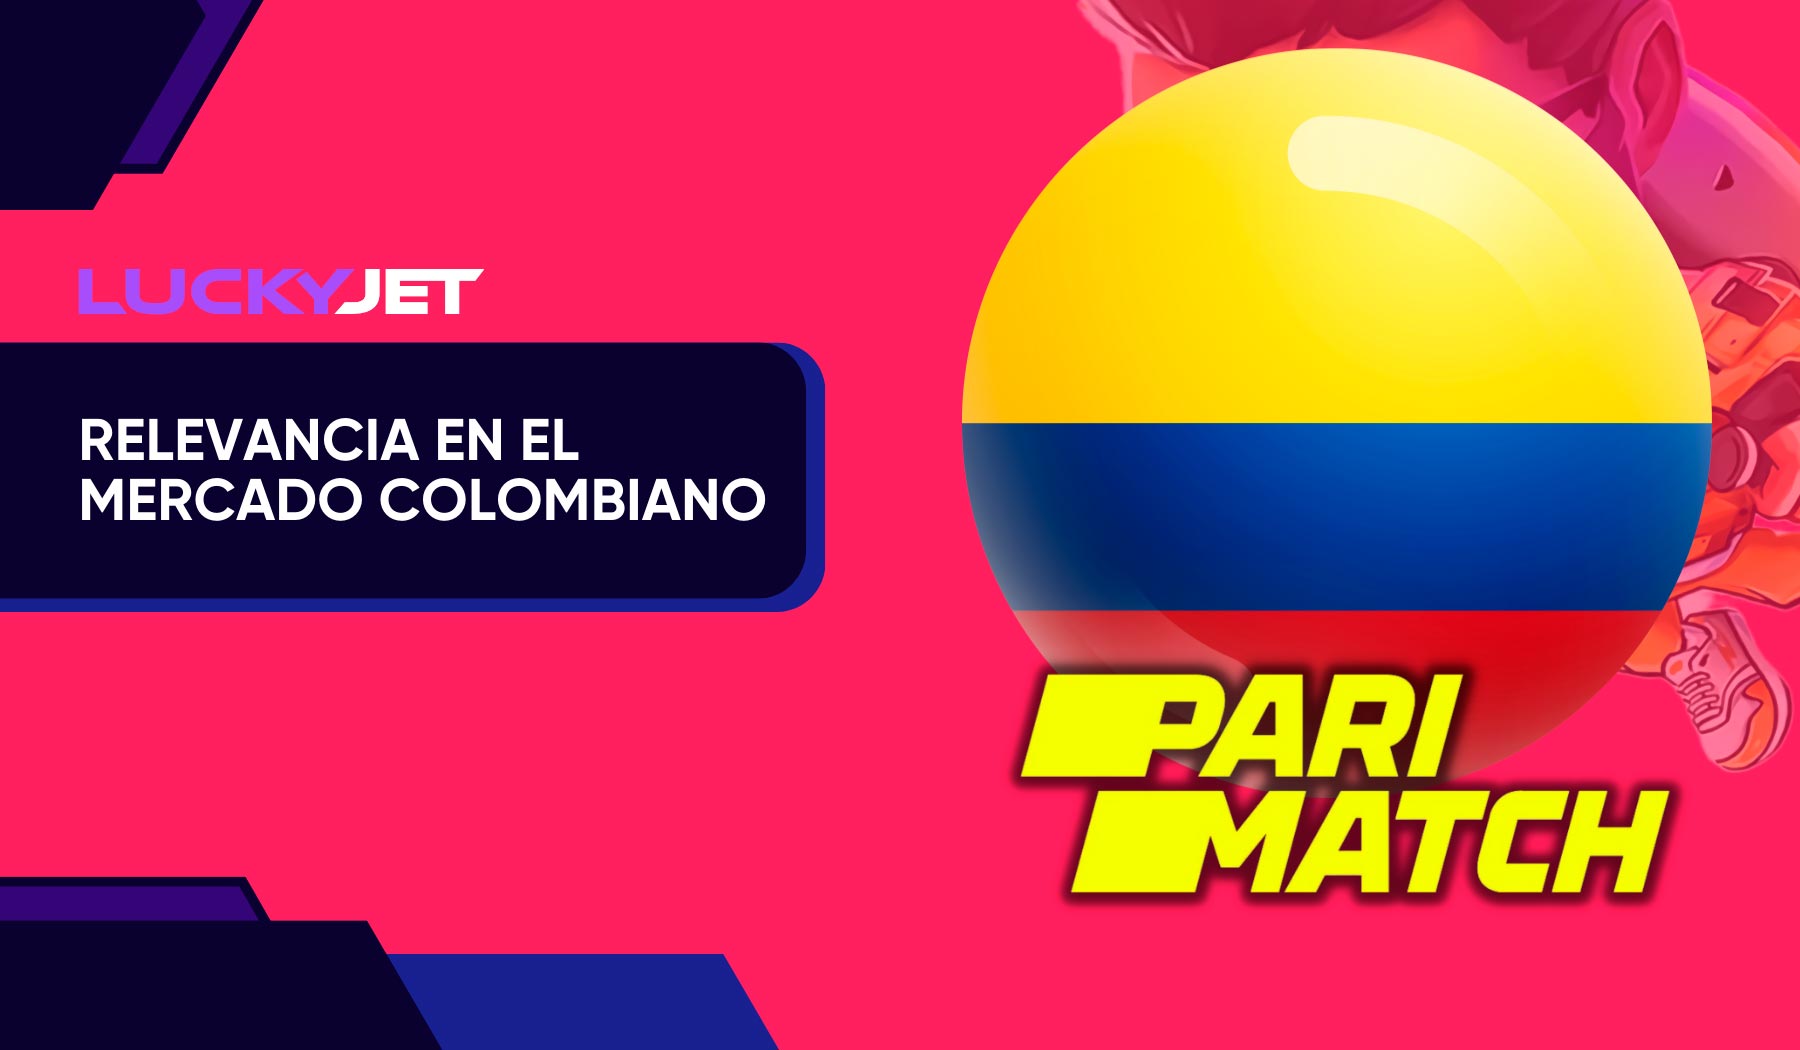 Lucky Jet Parimatch en el mercado colombiano